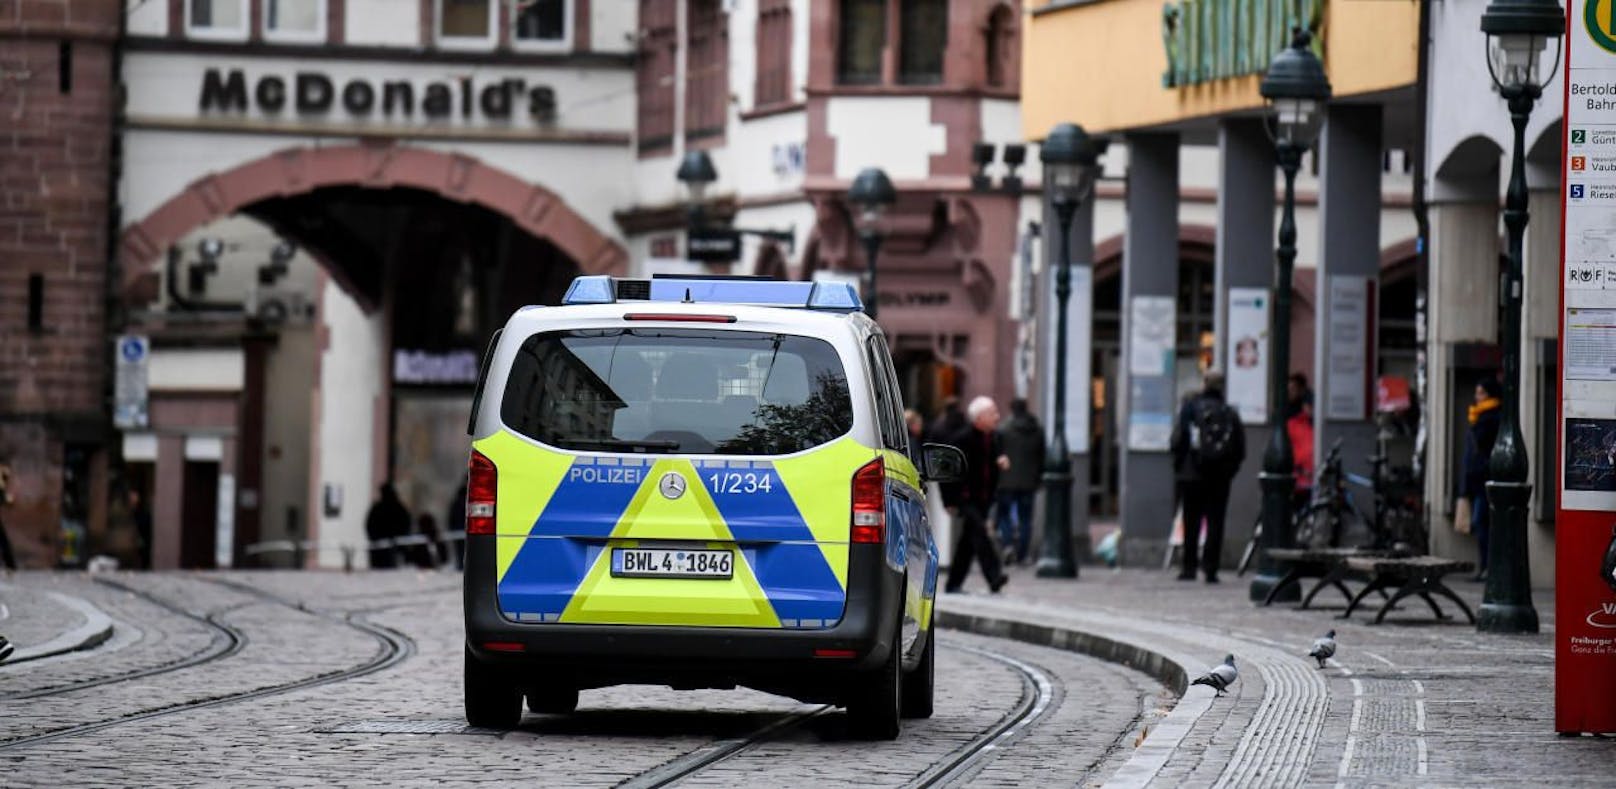 Im deutschen Freiburg wurde eine 18-Jährige von einer Gruppe von Männern vergewaltigt. Acht Verdächtige sind in Haft, nach zwei weiteren wird nun gefahndet.